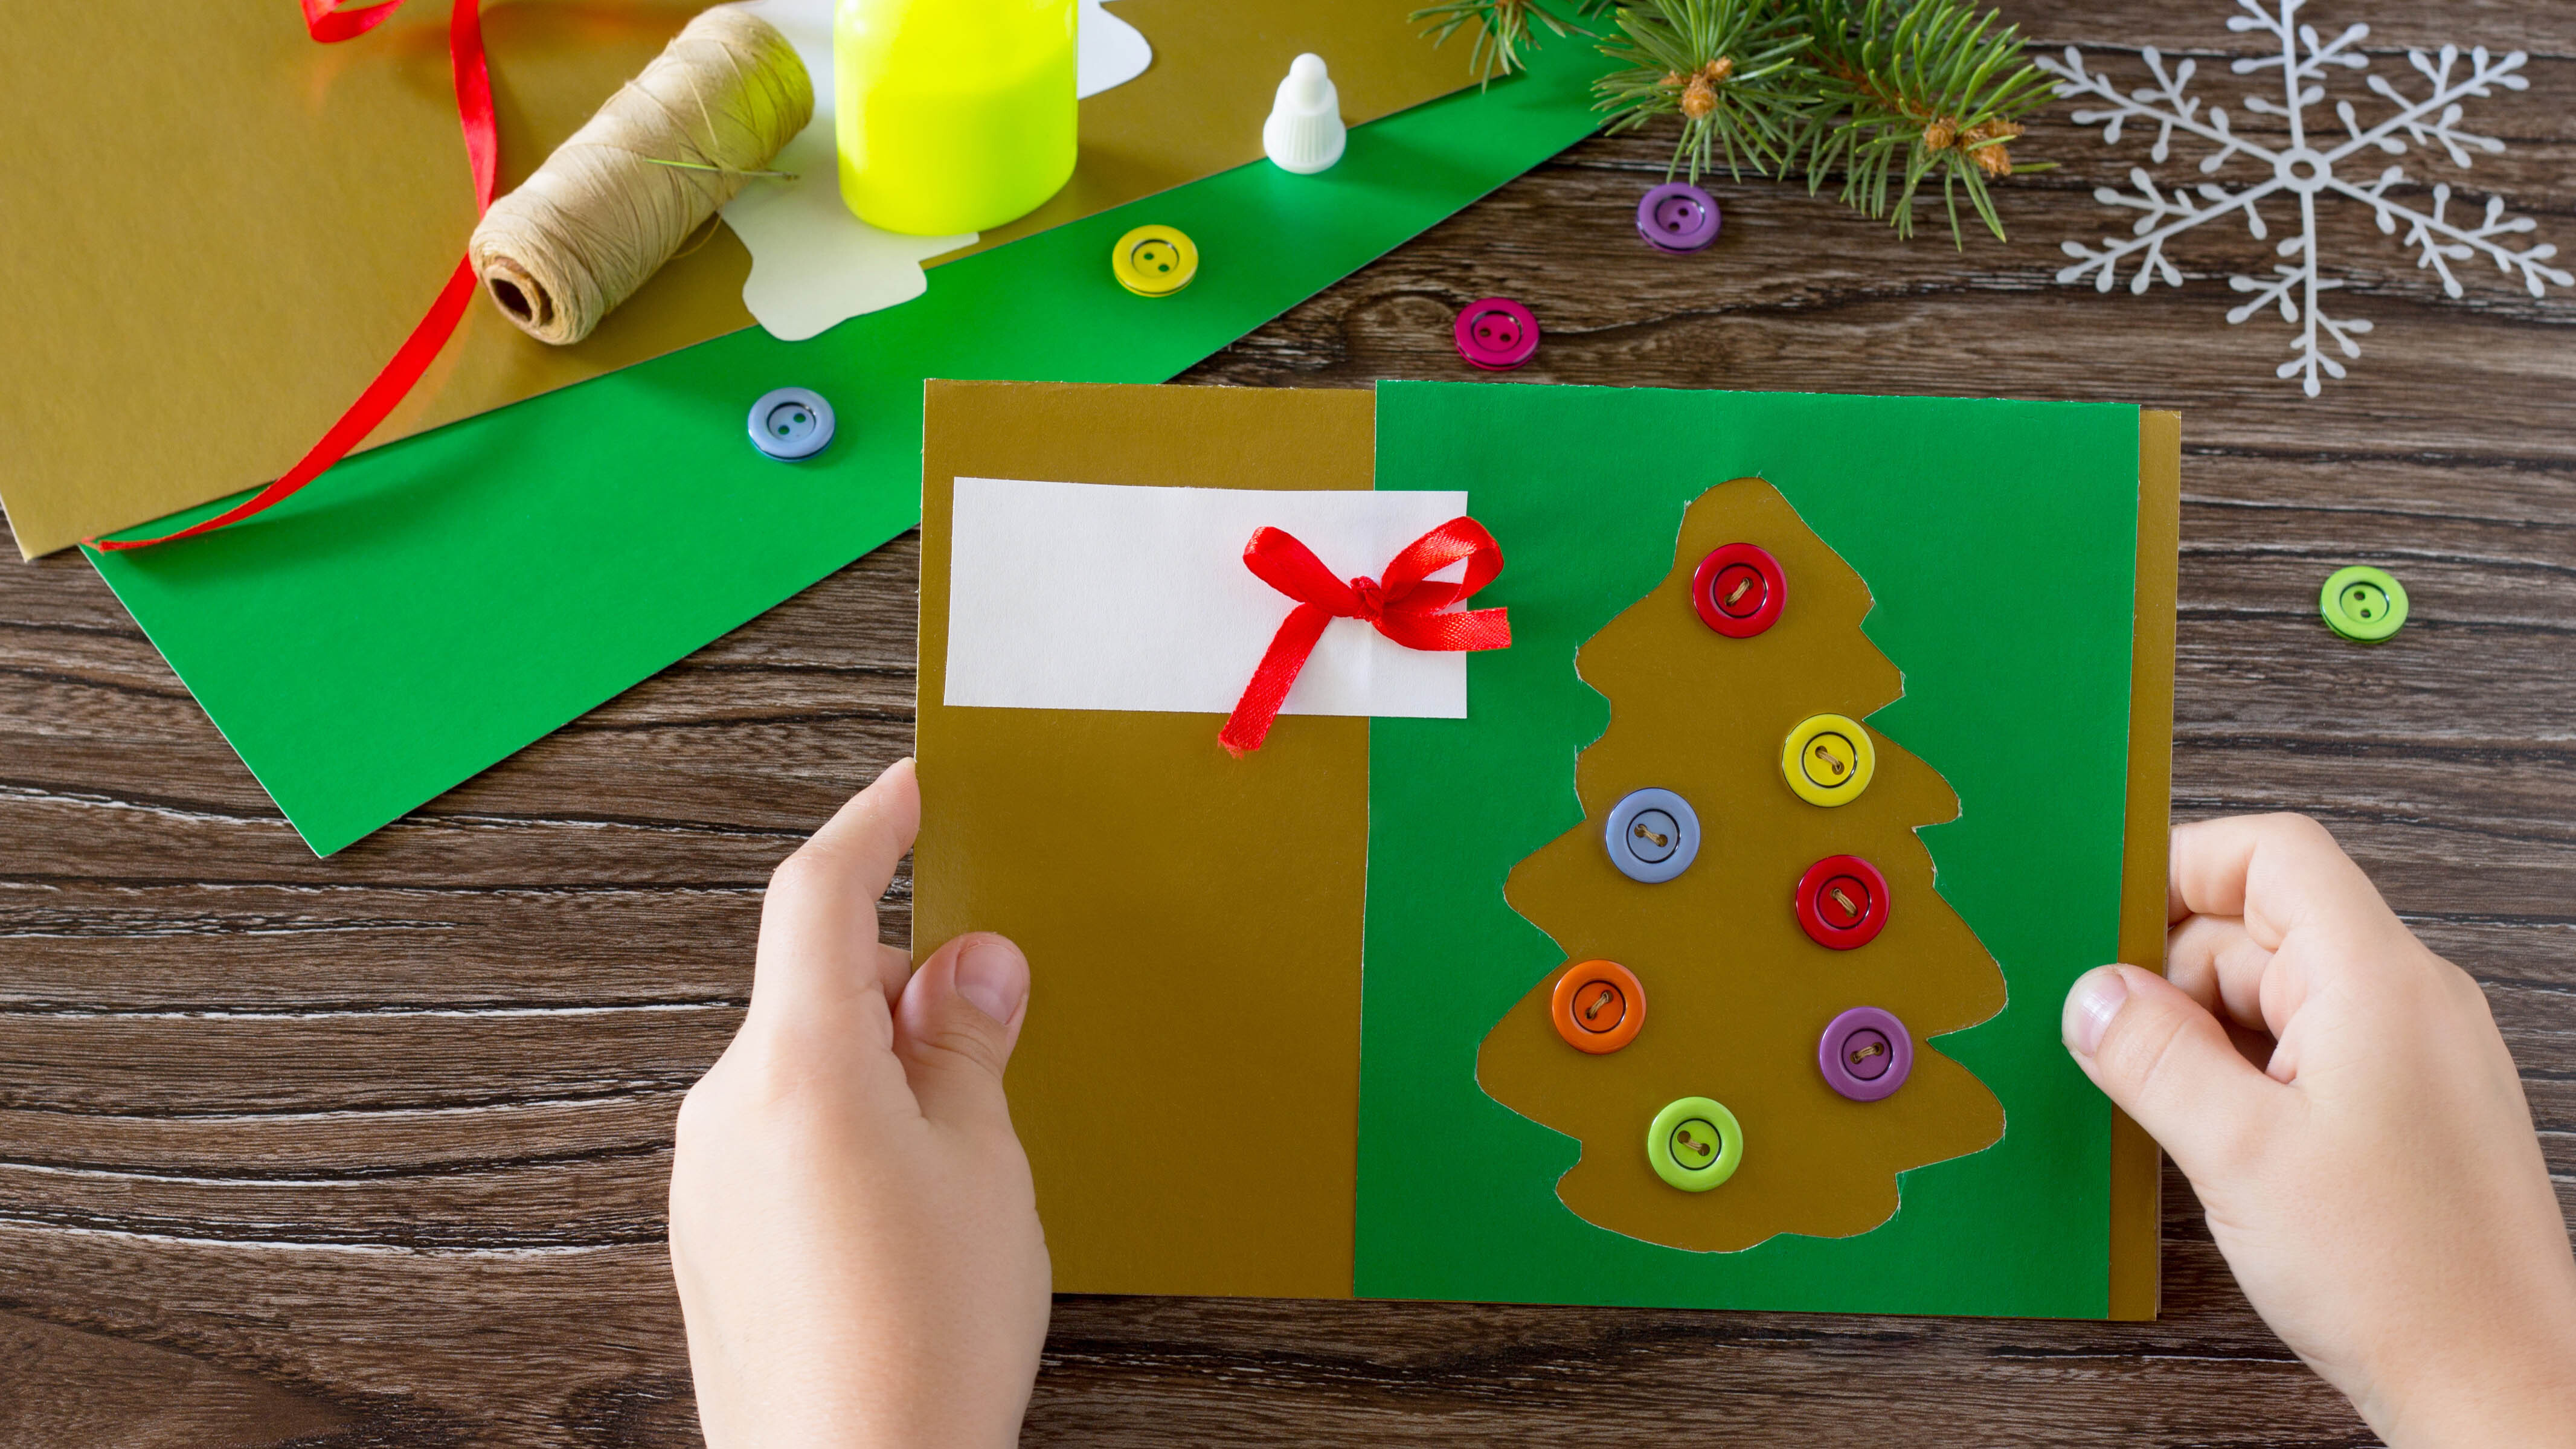 Ребенок делает открытку на рождественскую елку, используя пуговицы в качестве безделушек